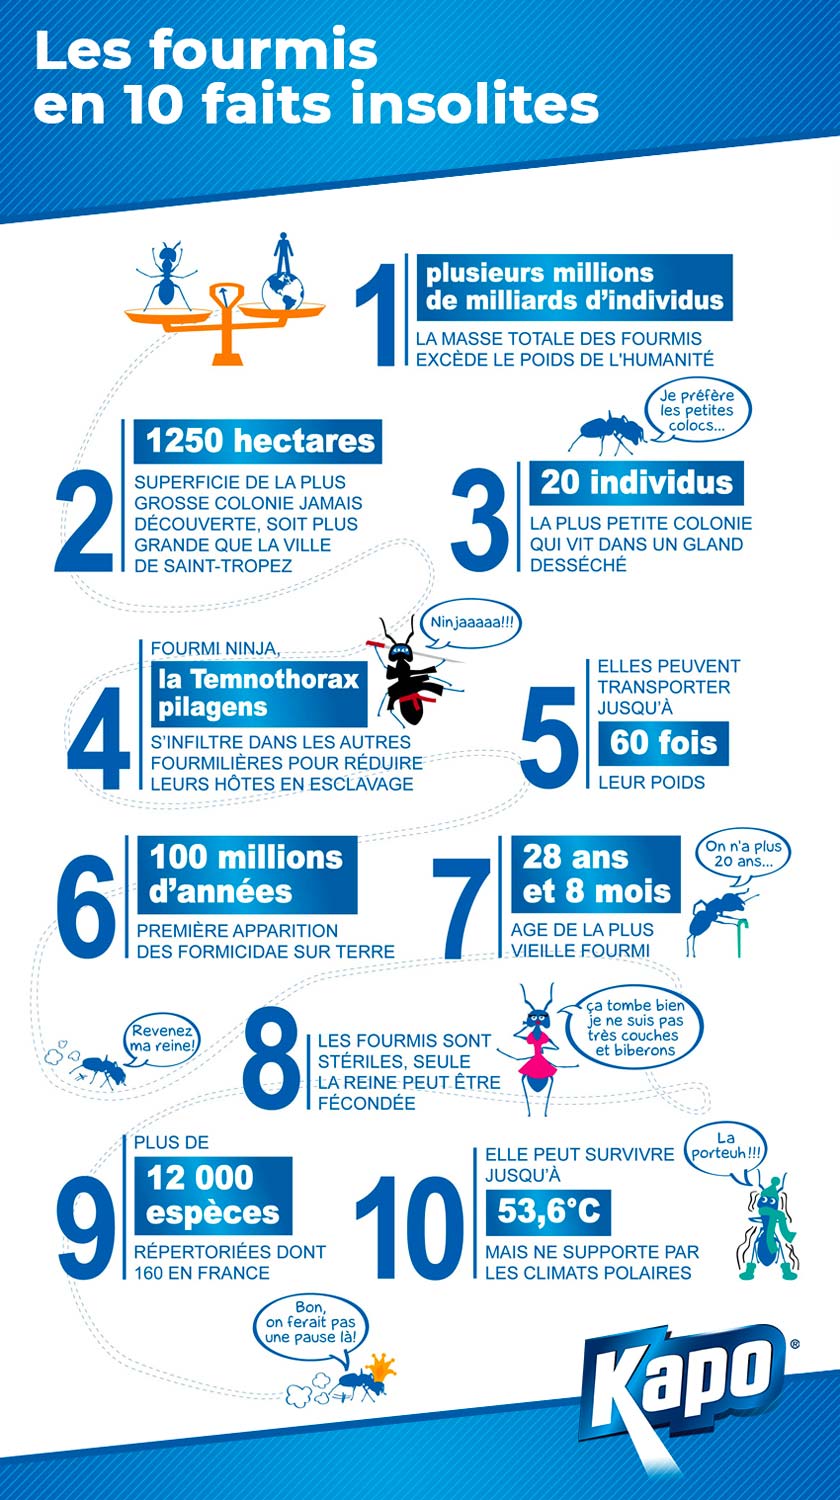 10 faits insolites sur les fourmis